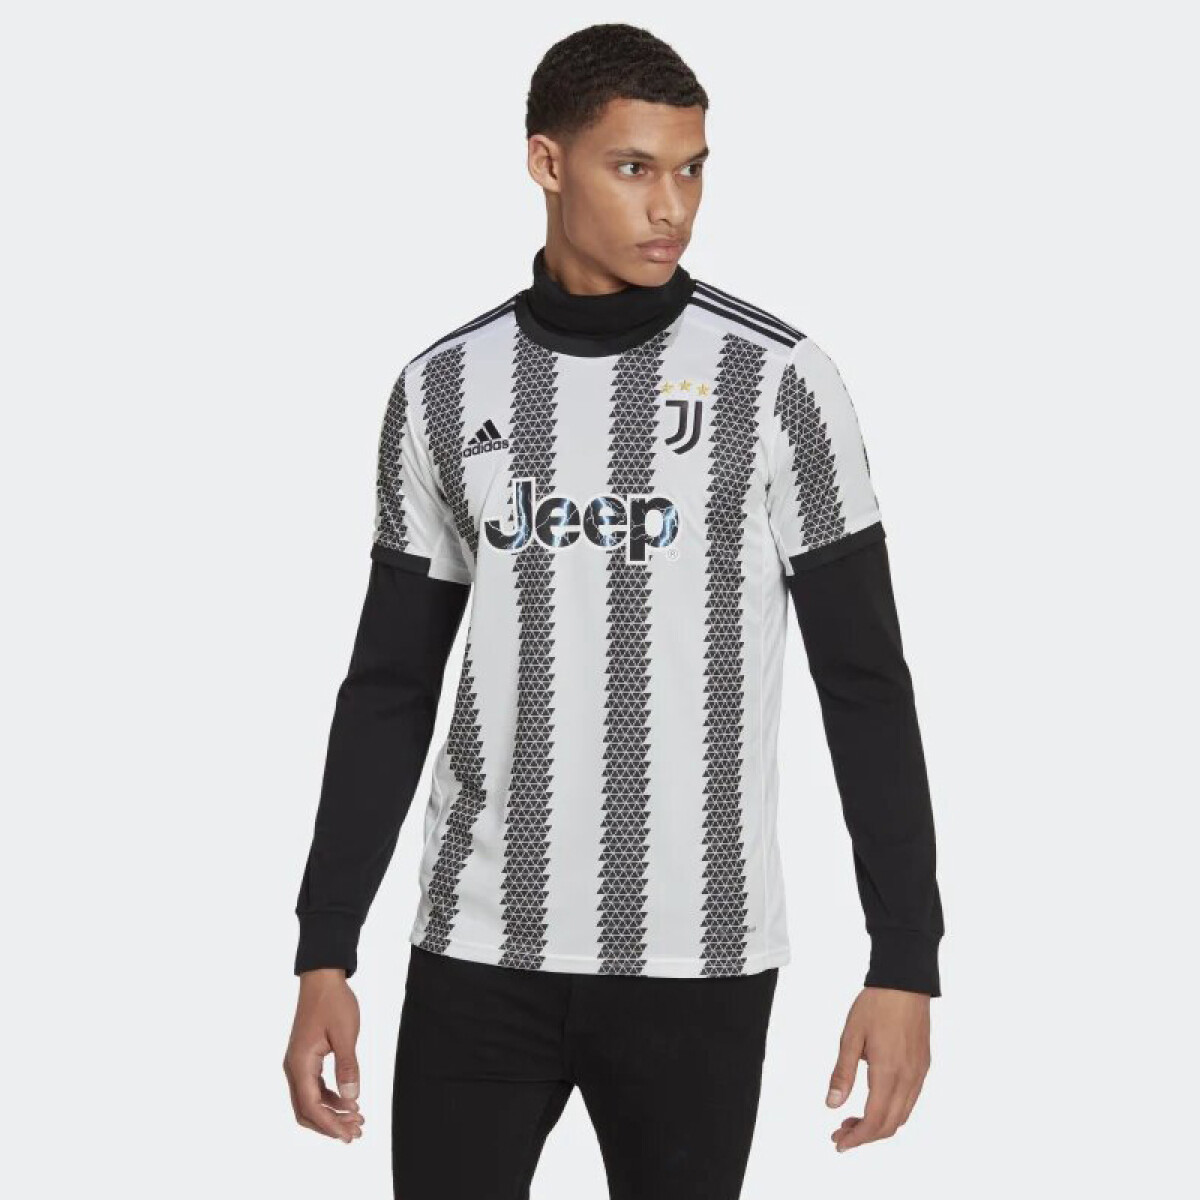 Remera Adidas Juventus 